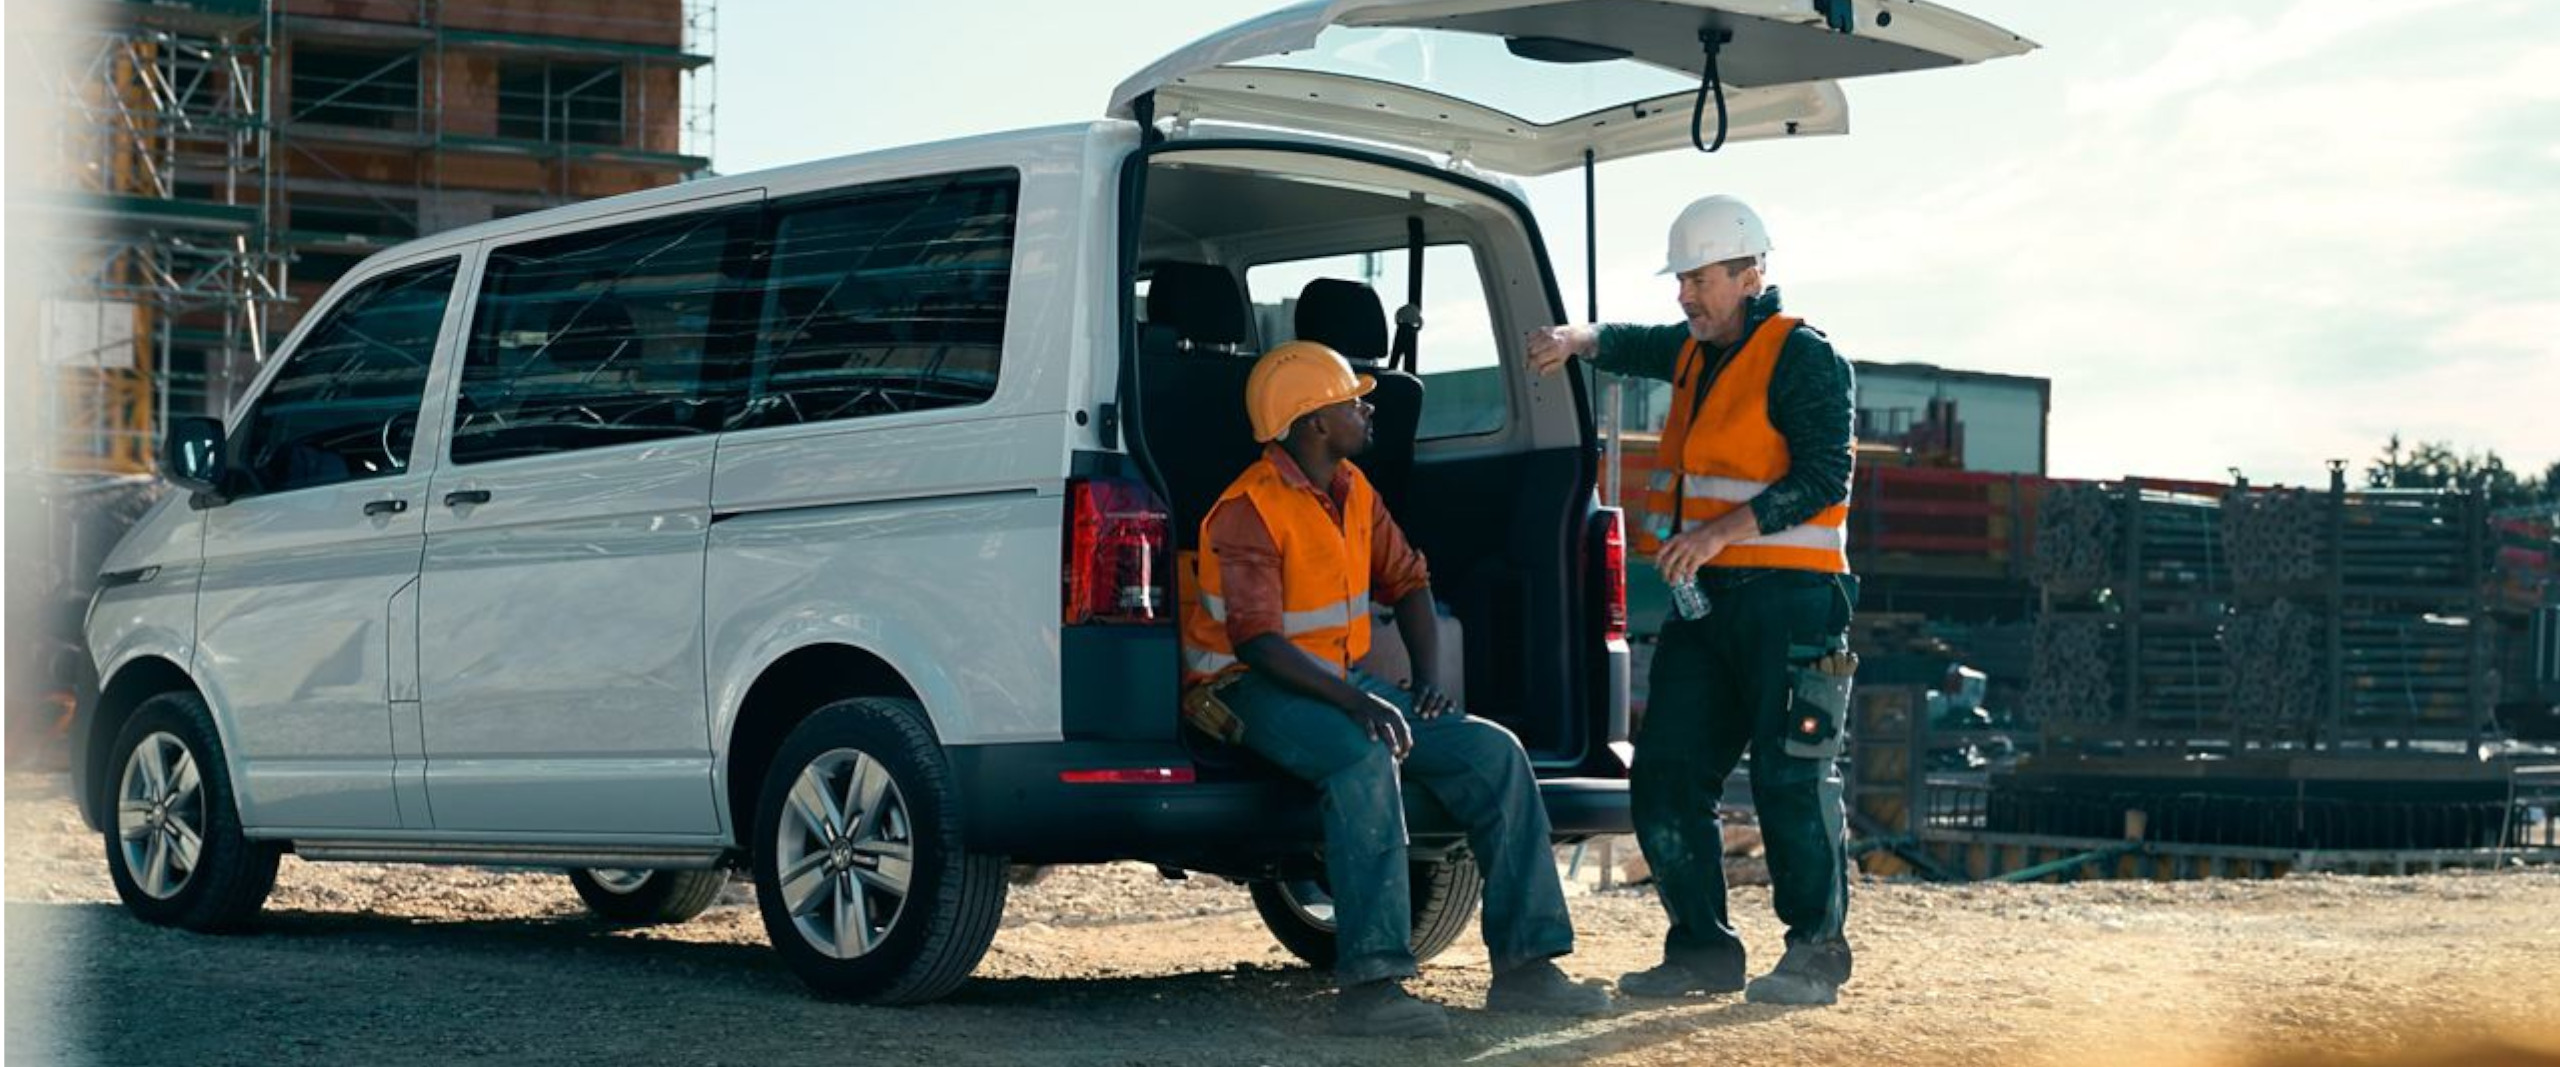 zwei Männer in Bauarbeiteruniform unterhalten sich am VW Transporter Kombi